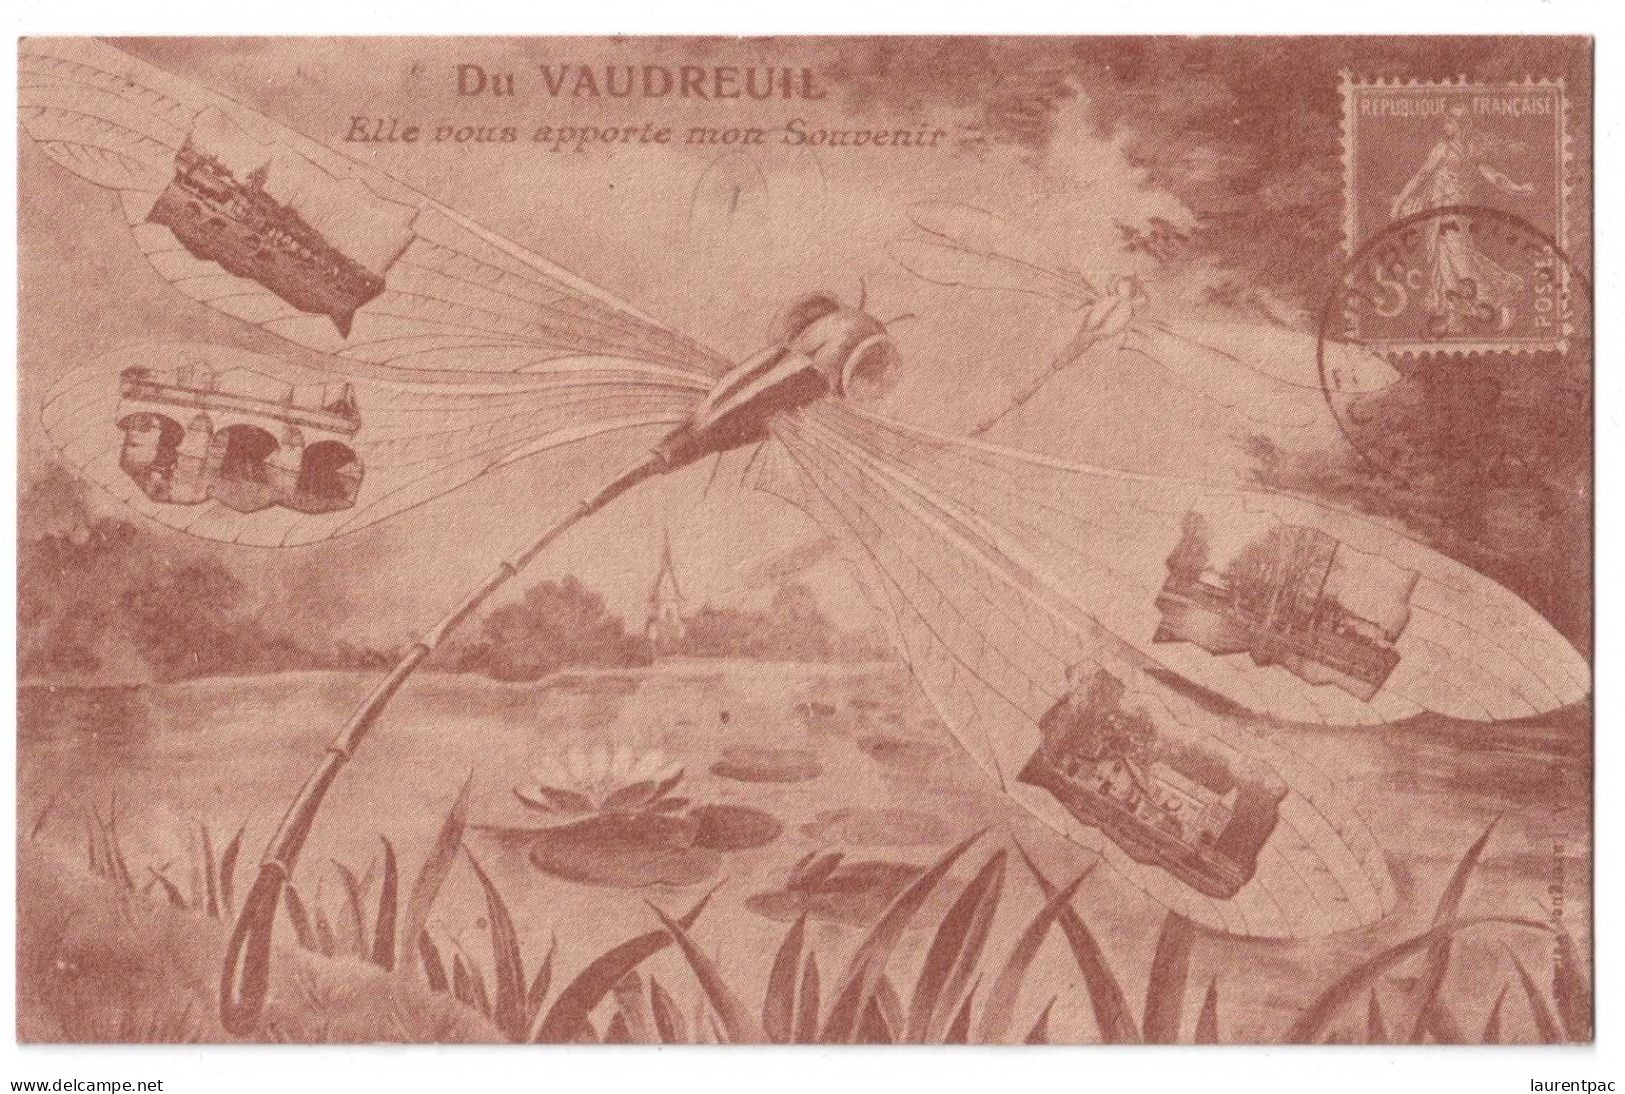 Du Vaudreuil Elle Vous Apporte Mon Souvenir - Association Des Amis Collectionneurs N°190 - édit. HB  + Verso - Le Vaudreuil